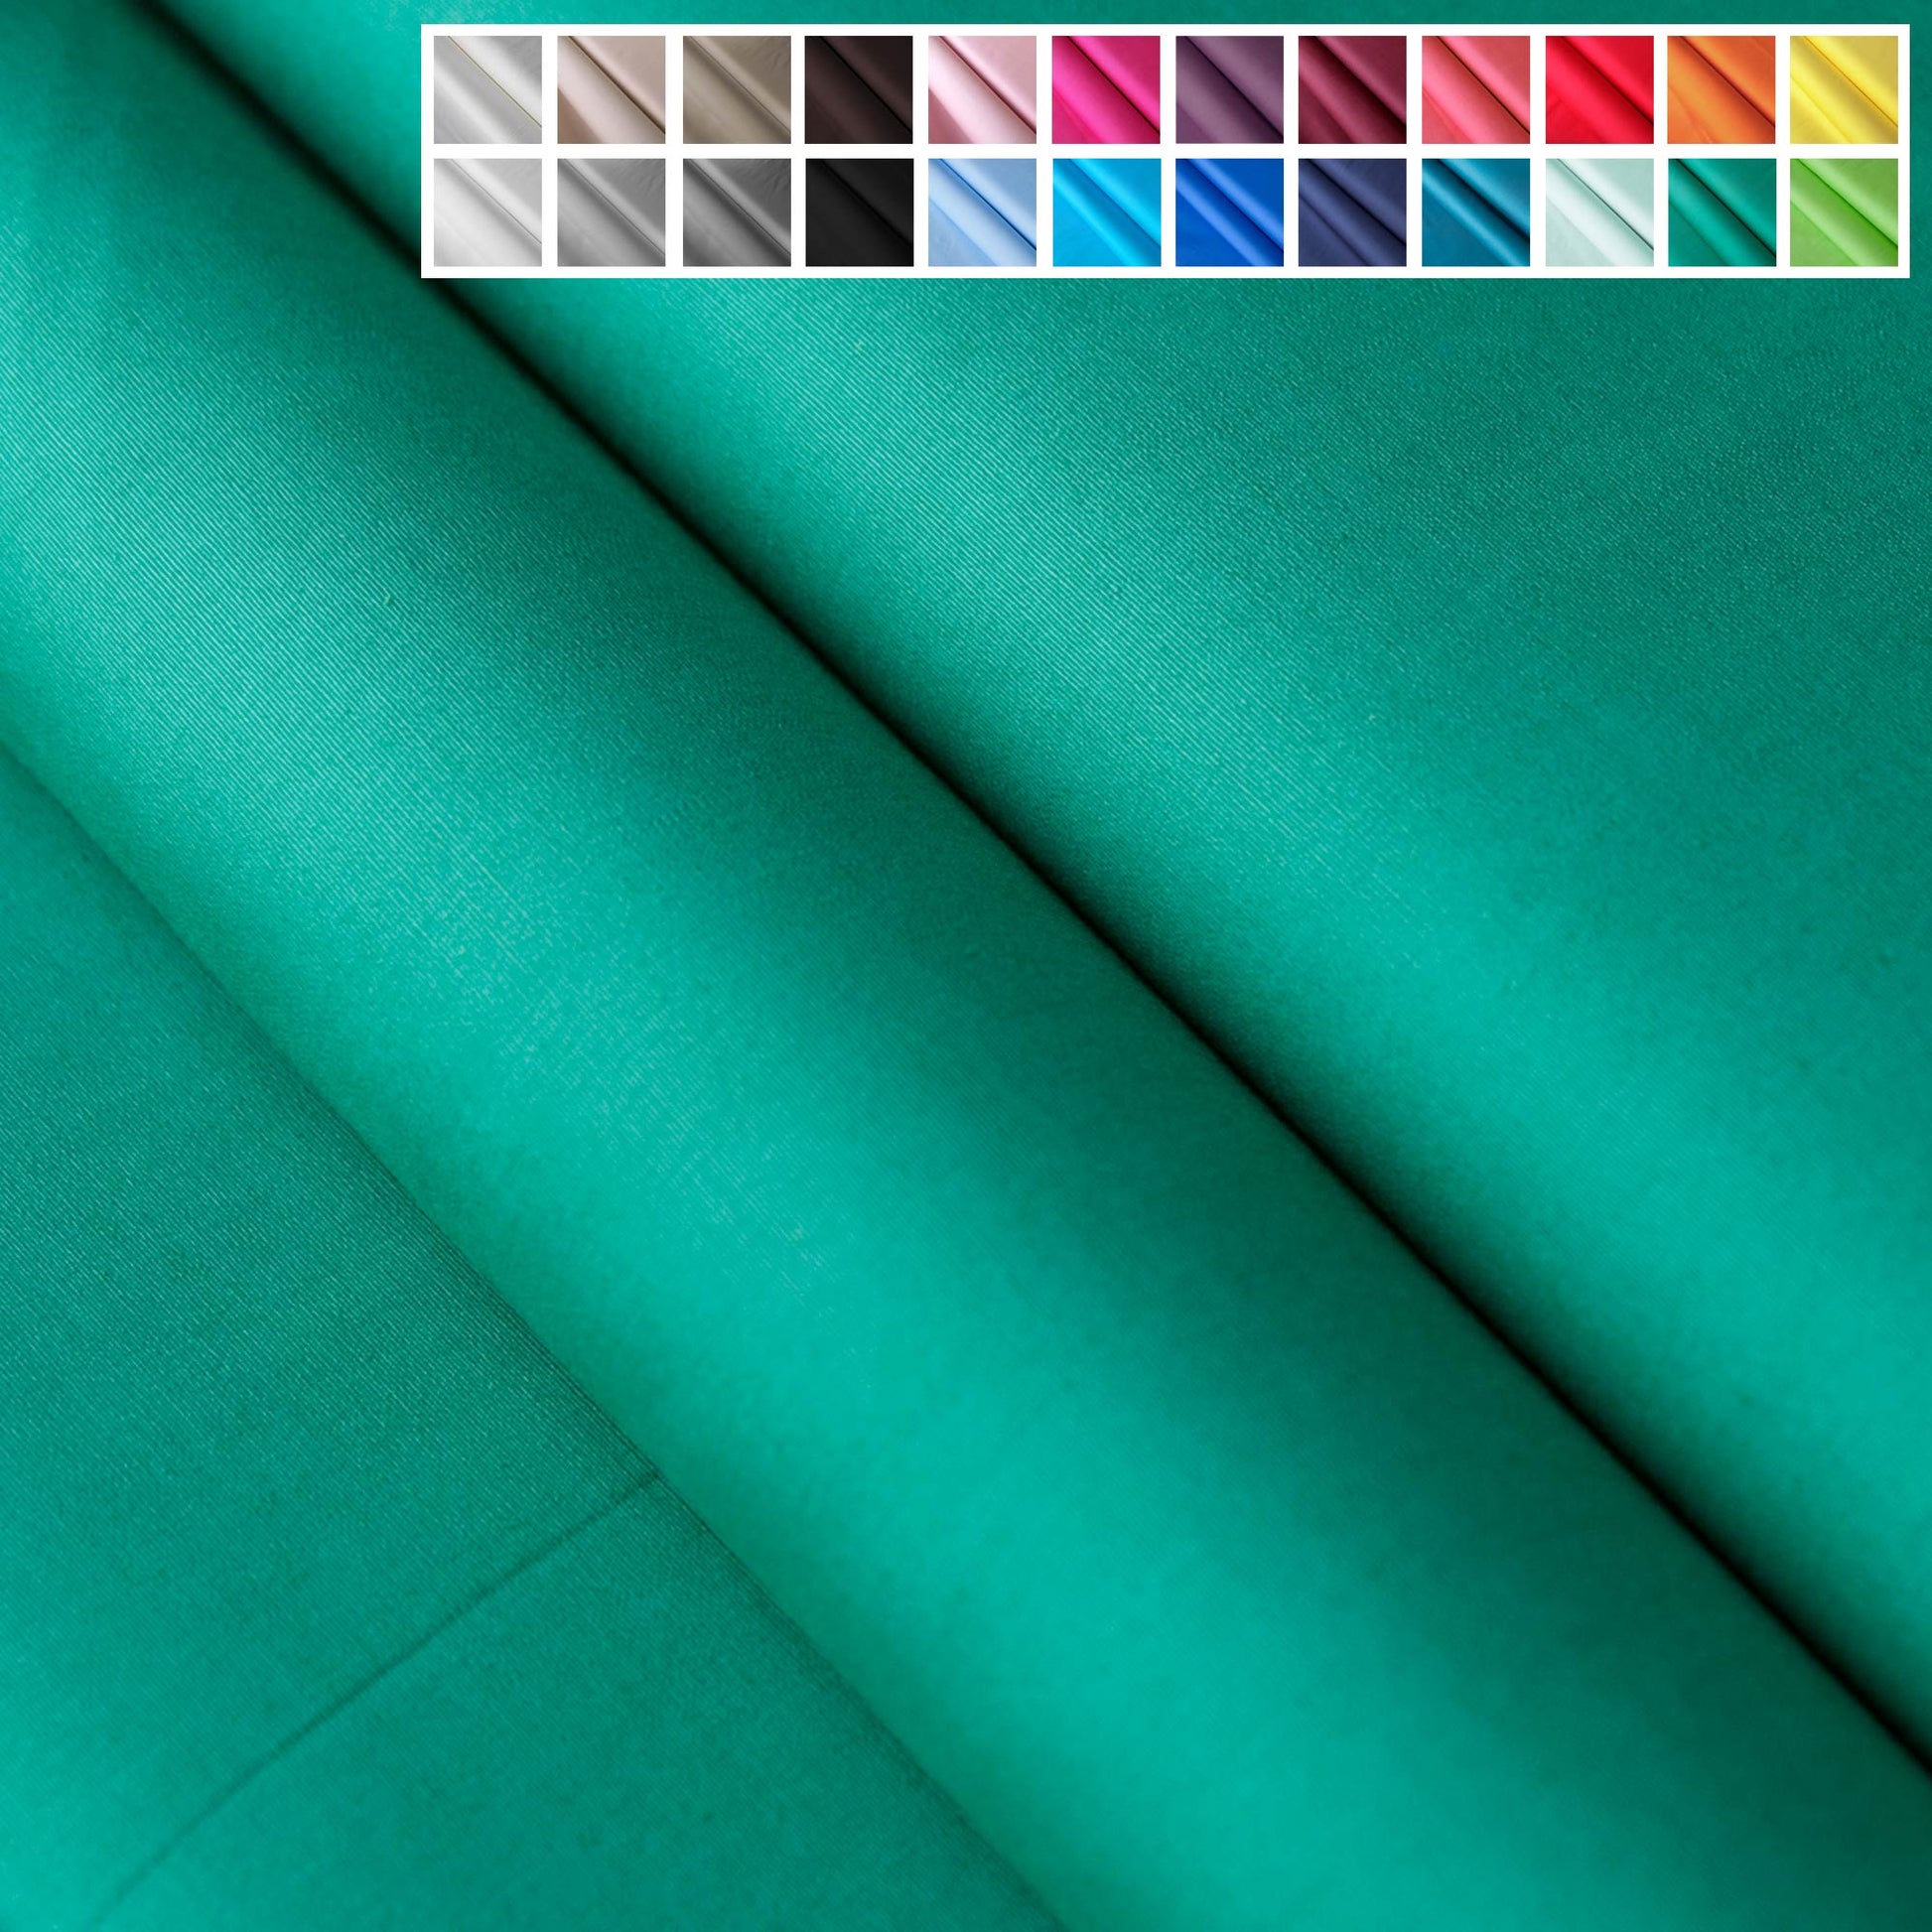 Baumwollstoffe Uni / Einfarbig - über 20 Farben - Stoffe Kudellino